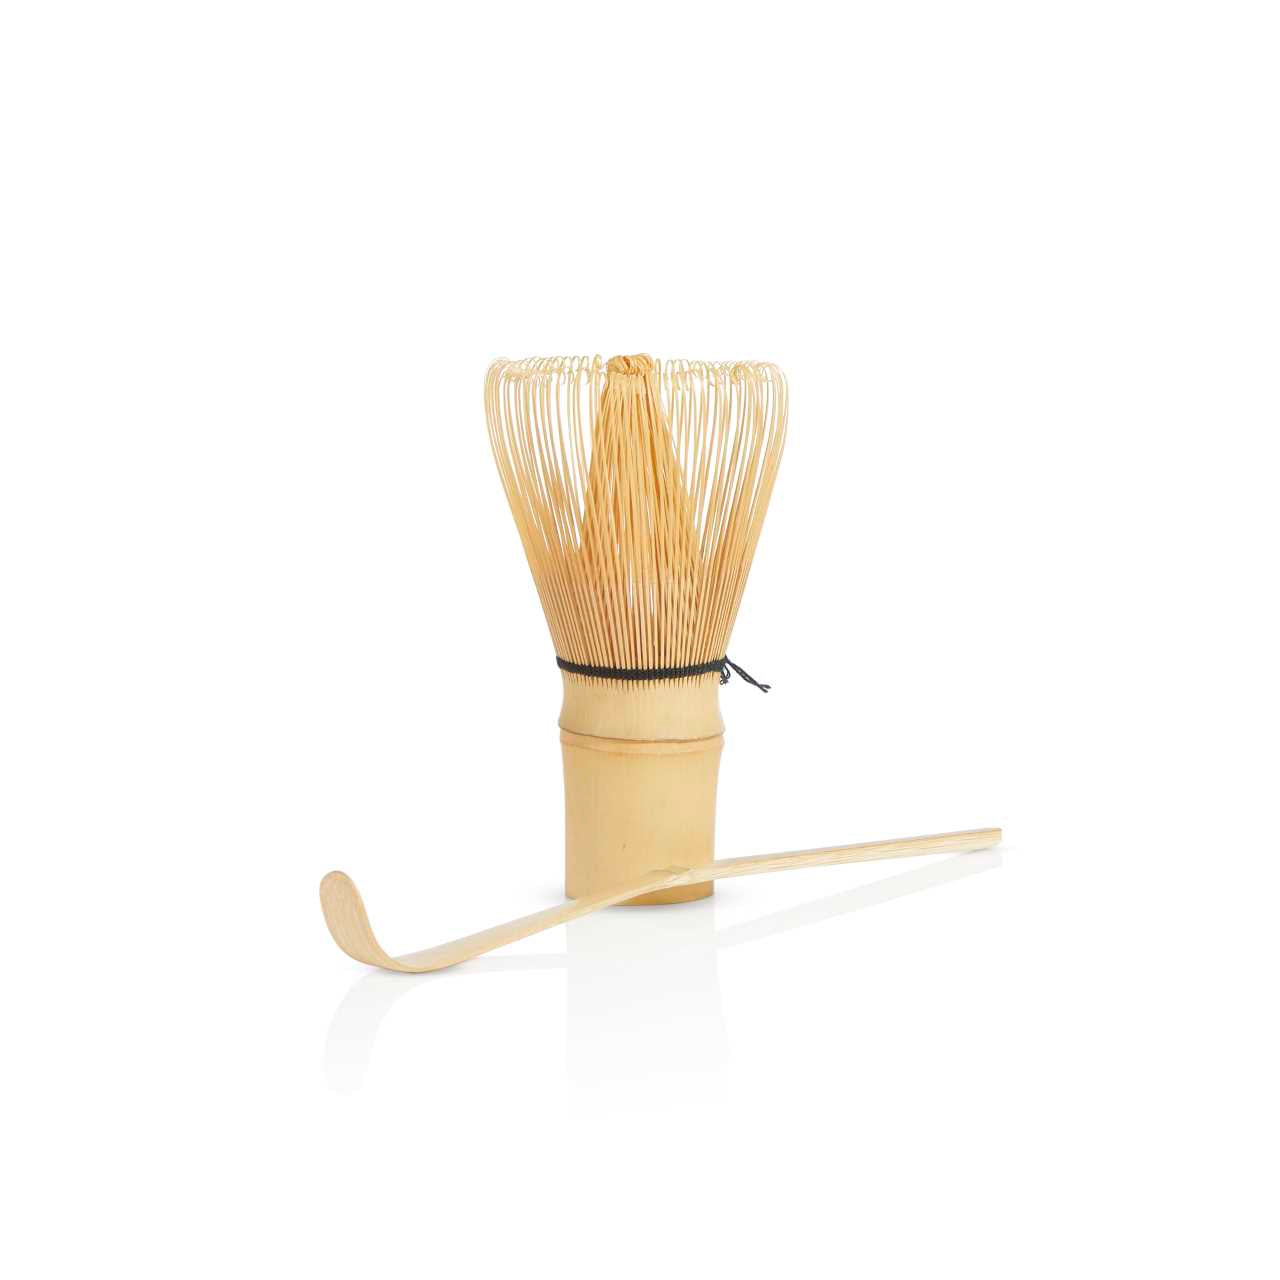 Bamboo whisk and bamboo spatula